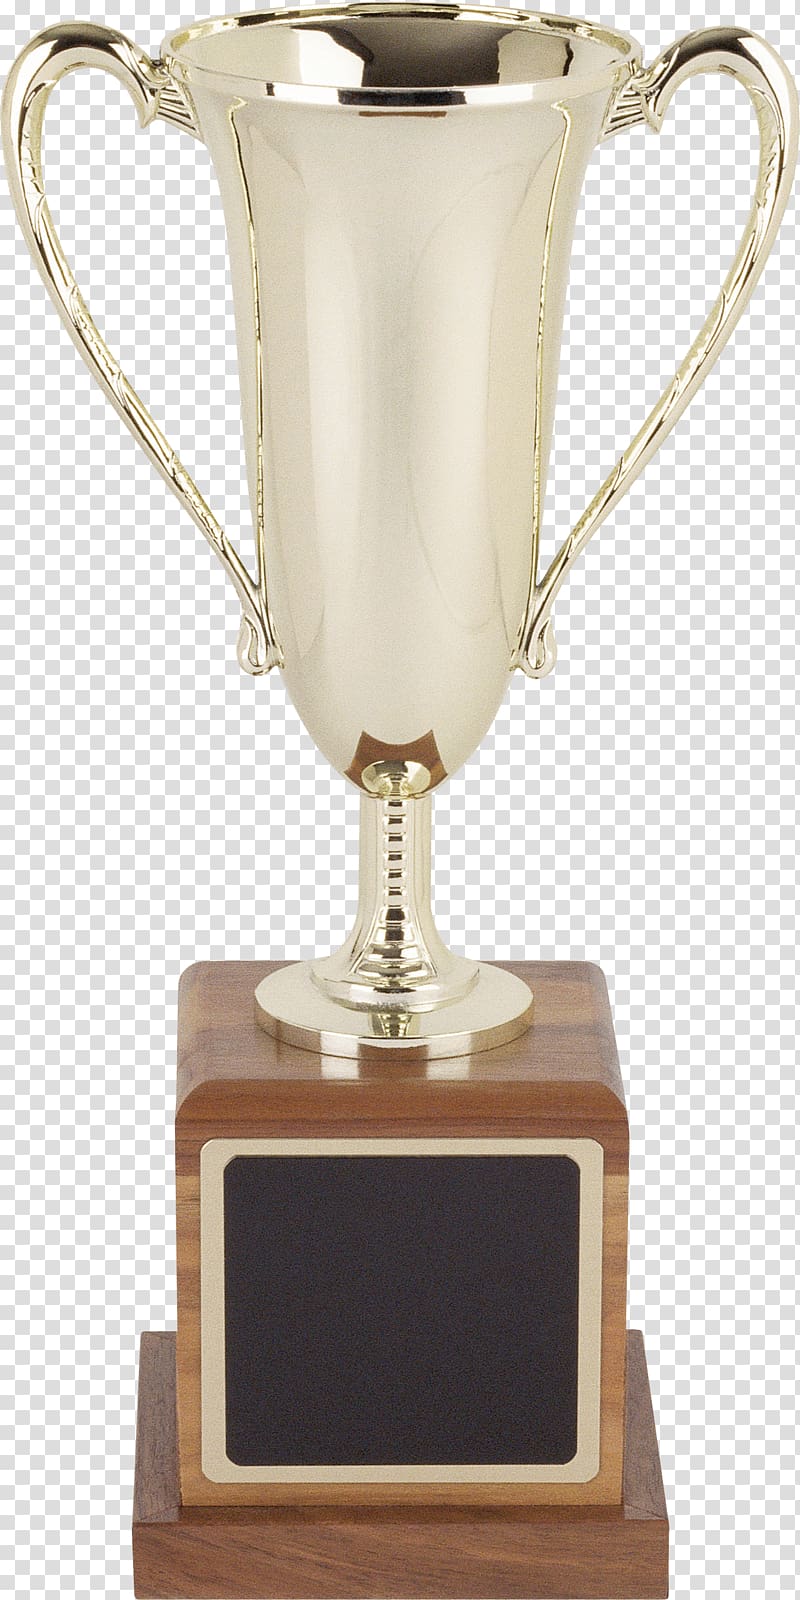 Trophy Award Scape , bronze drum vase design transparent background PNG clipart